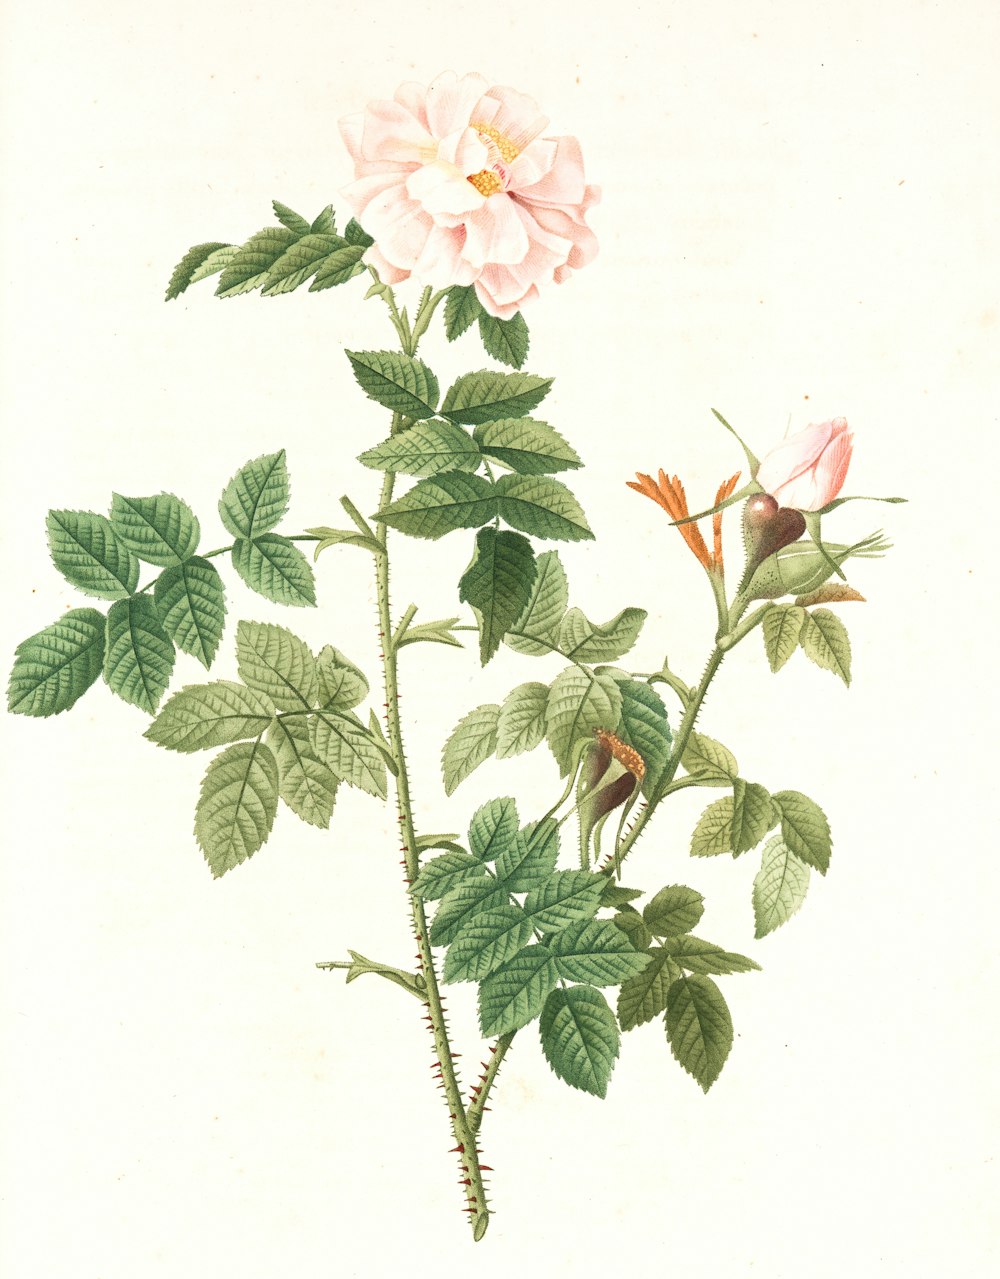 fiori rosa e bianchi con foglie verdi